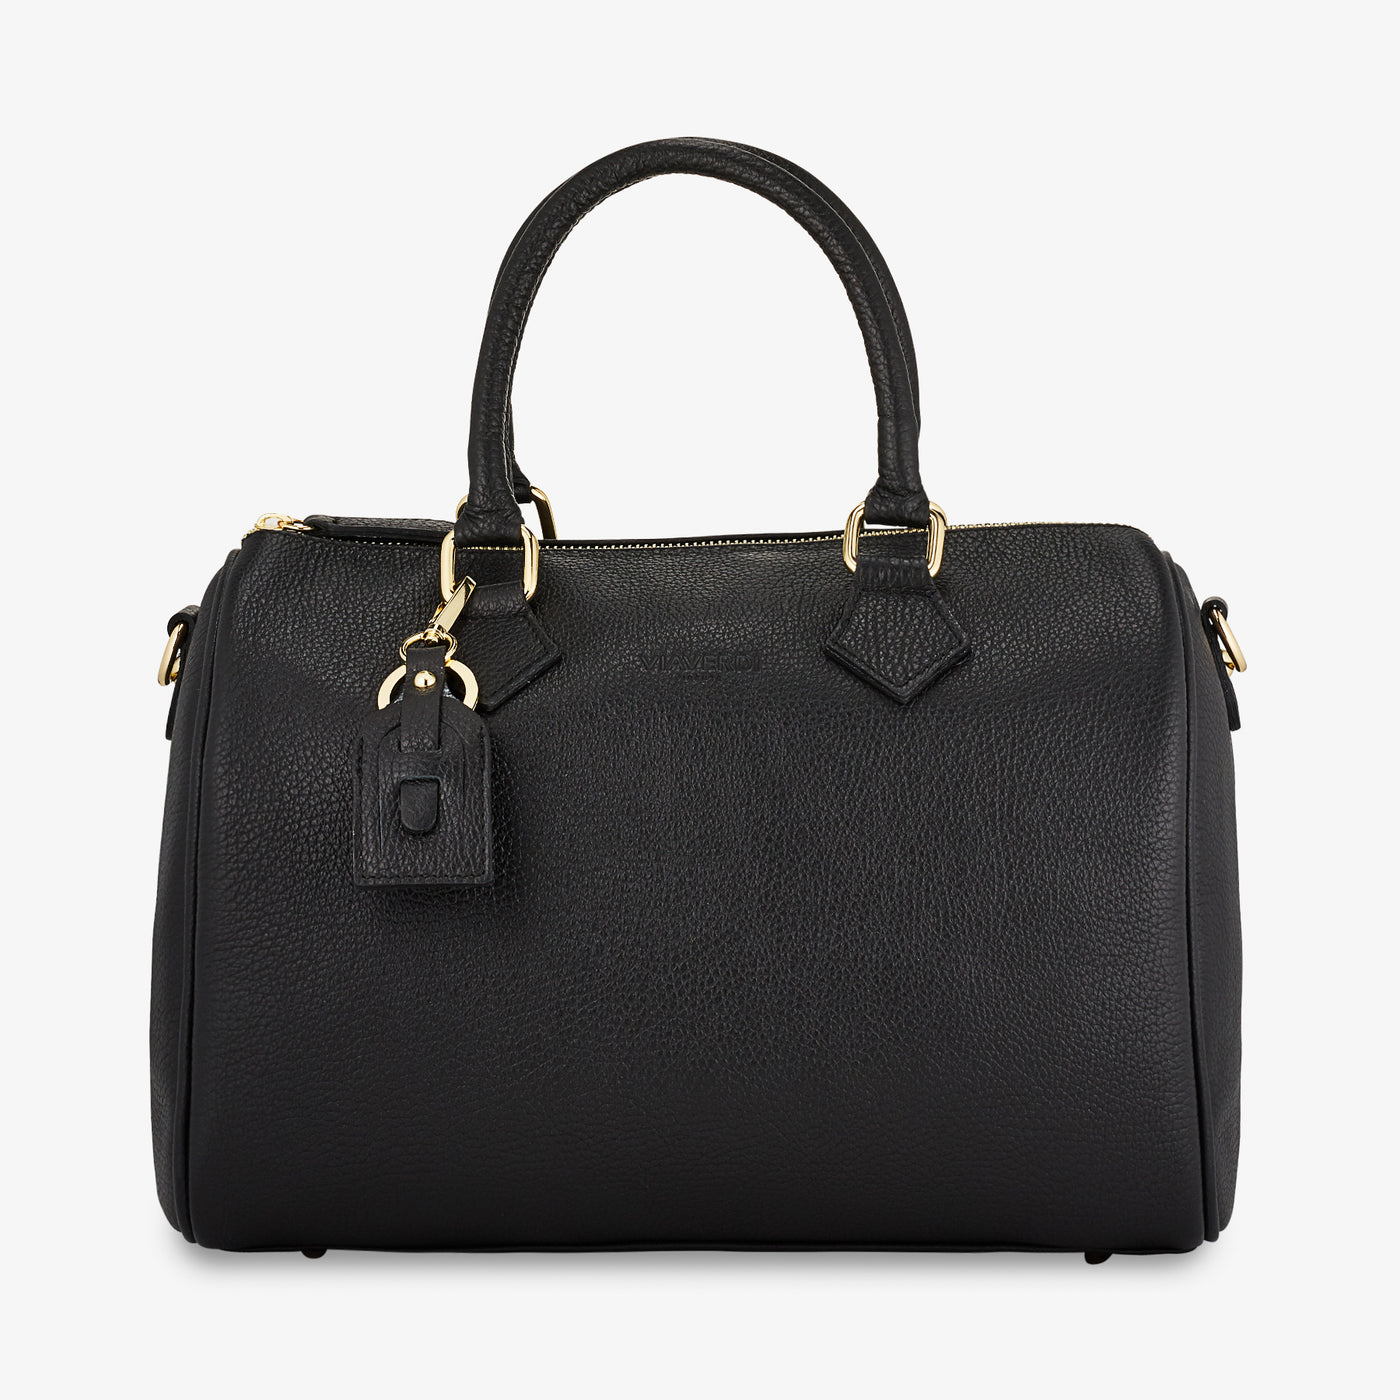 VIAVERDI Black Leather Boston Bag Made in Italy